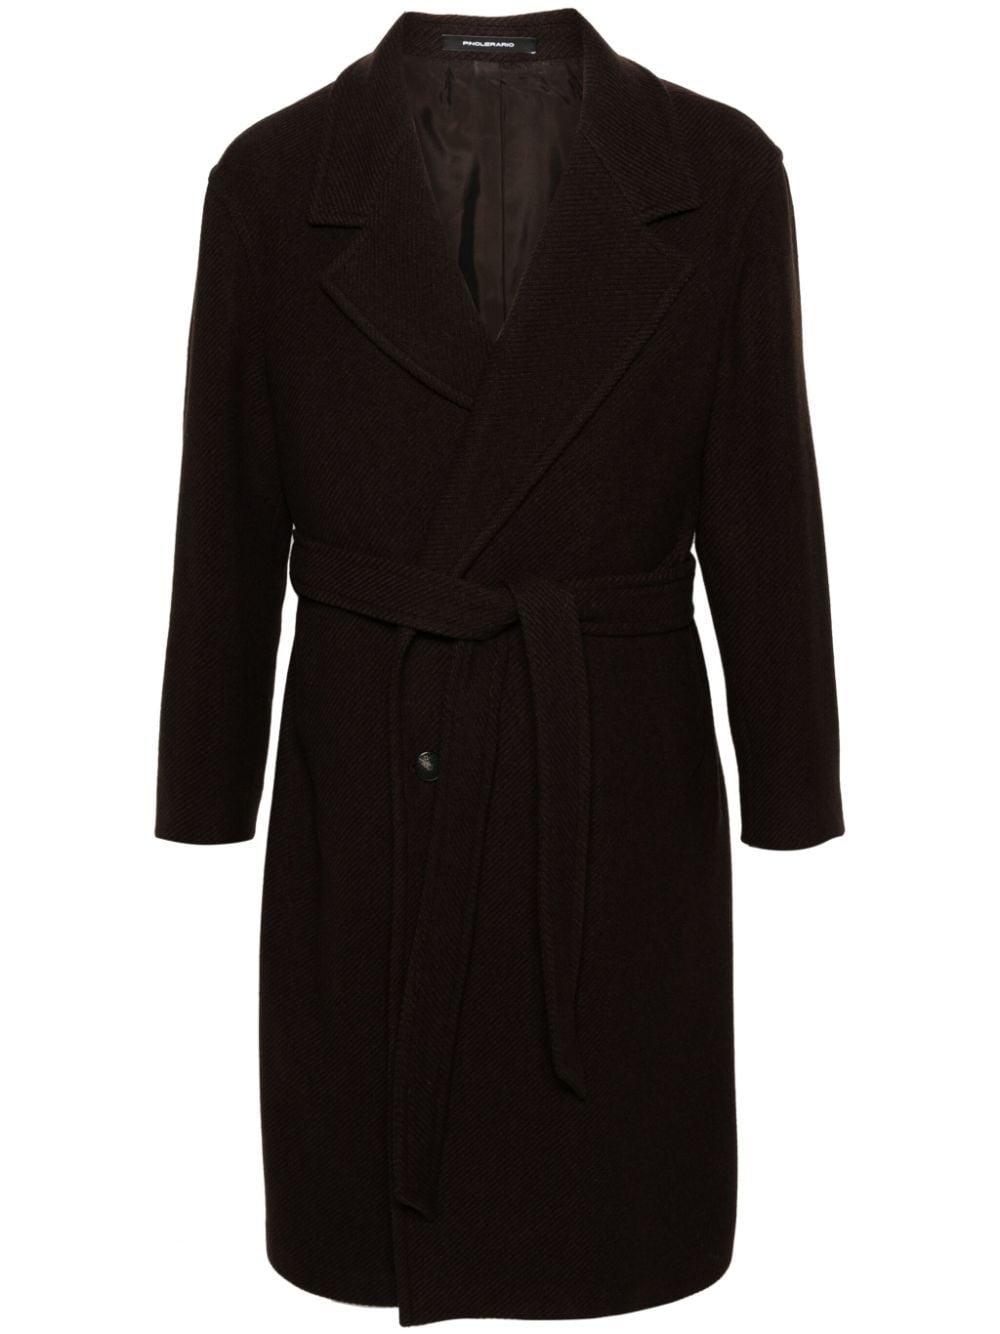 Tagliatore Royce Wool-blend Coat In Brown